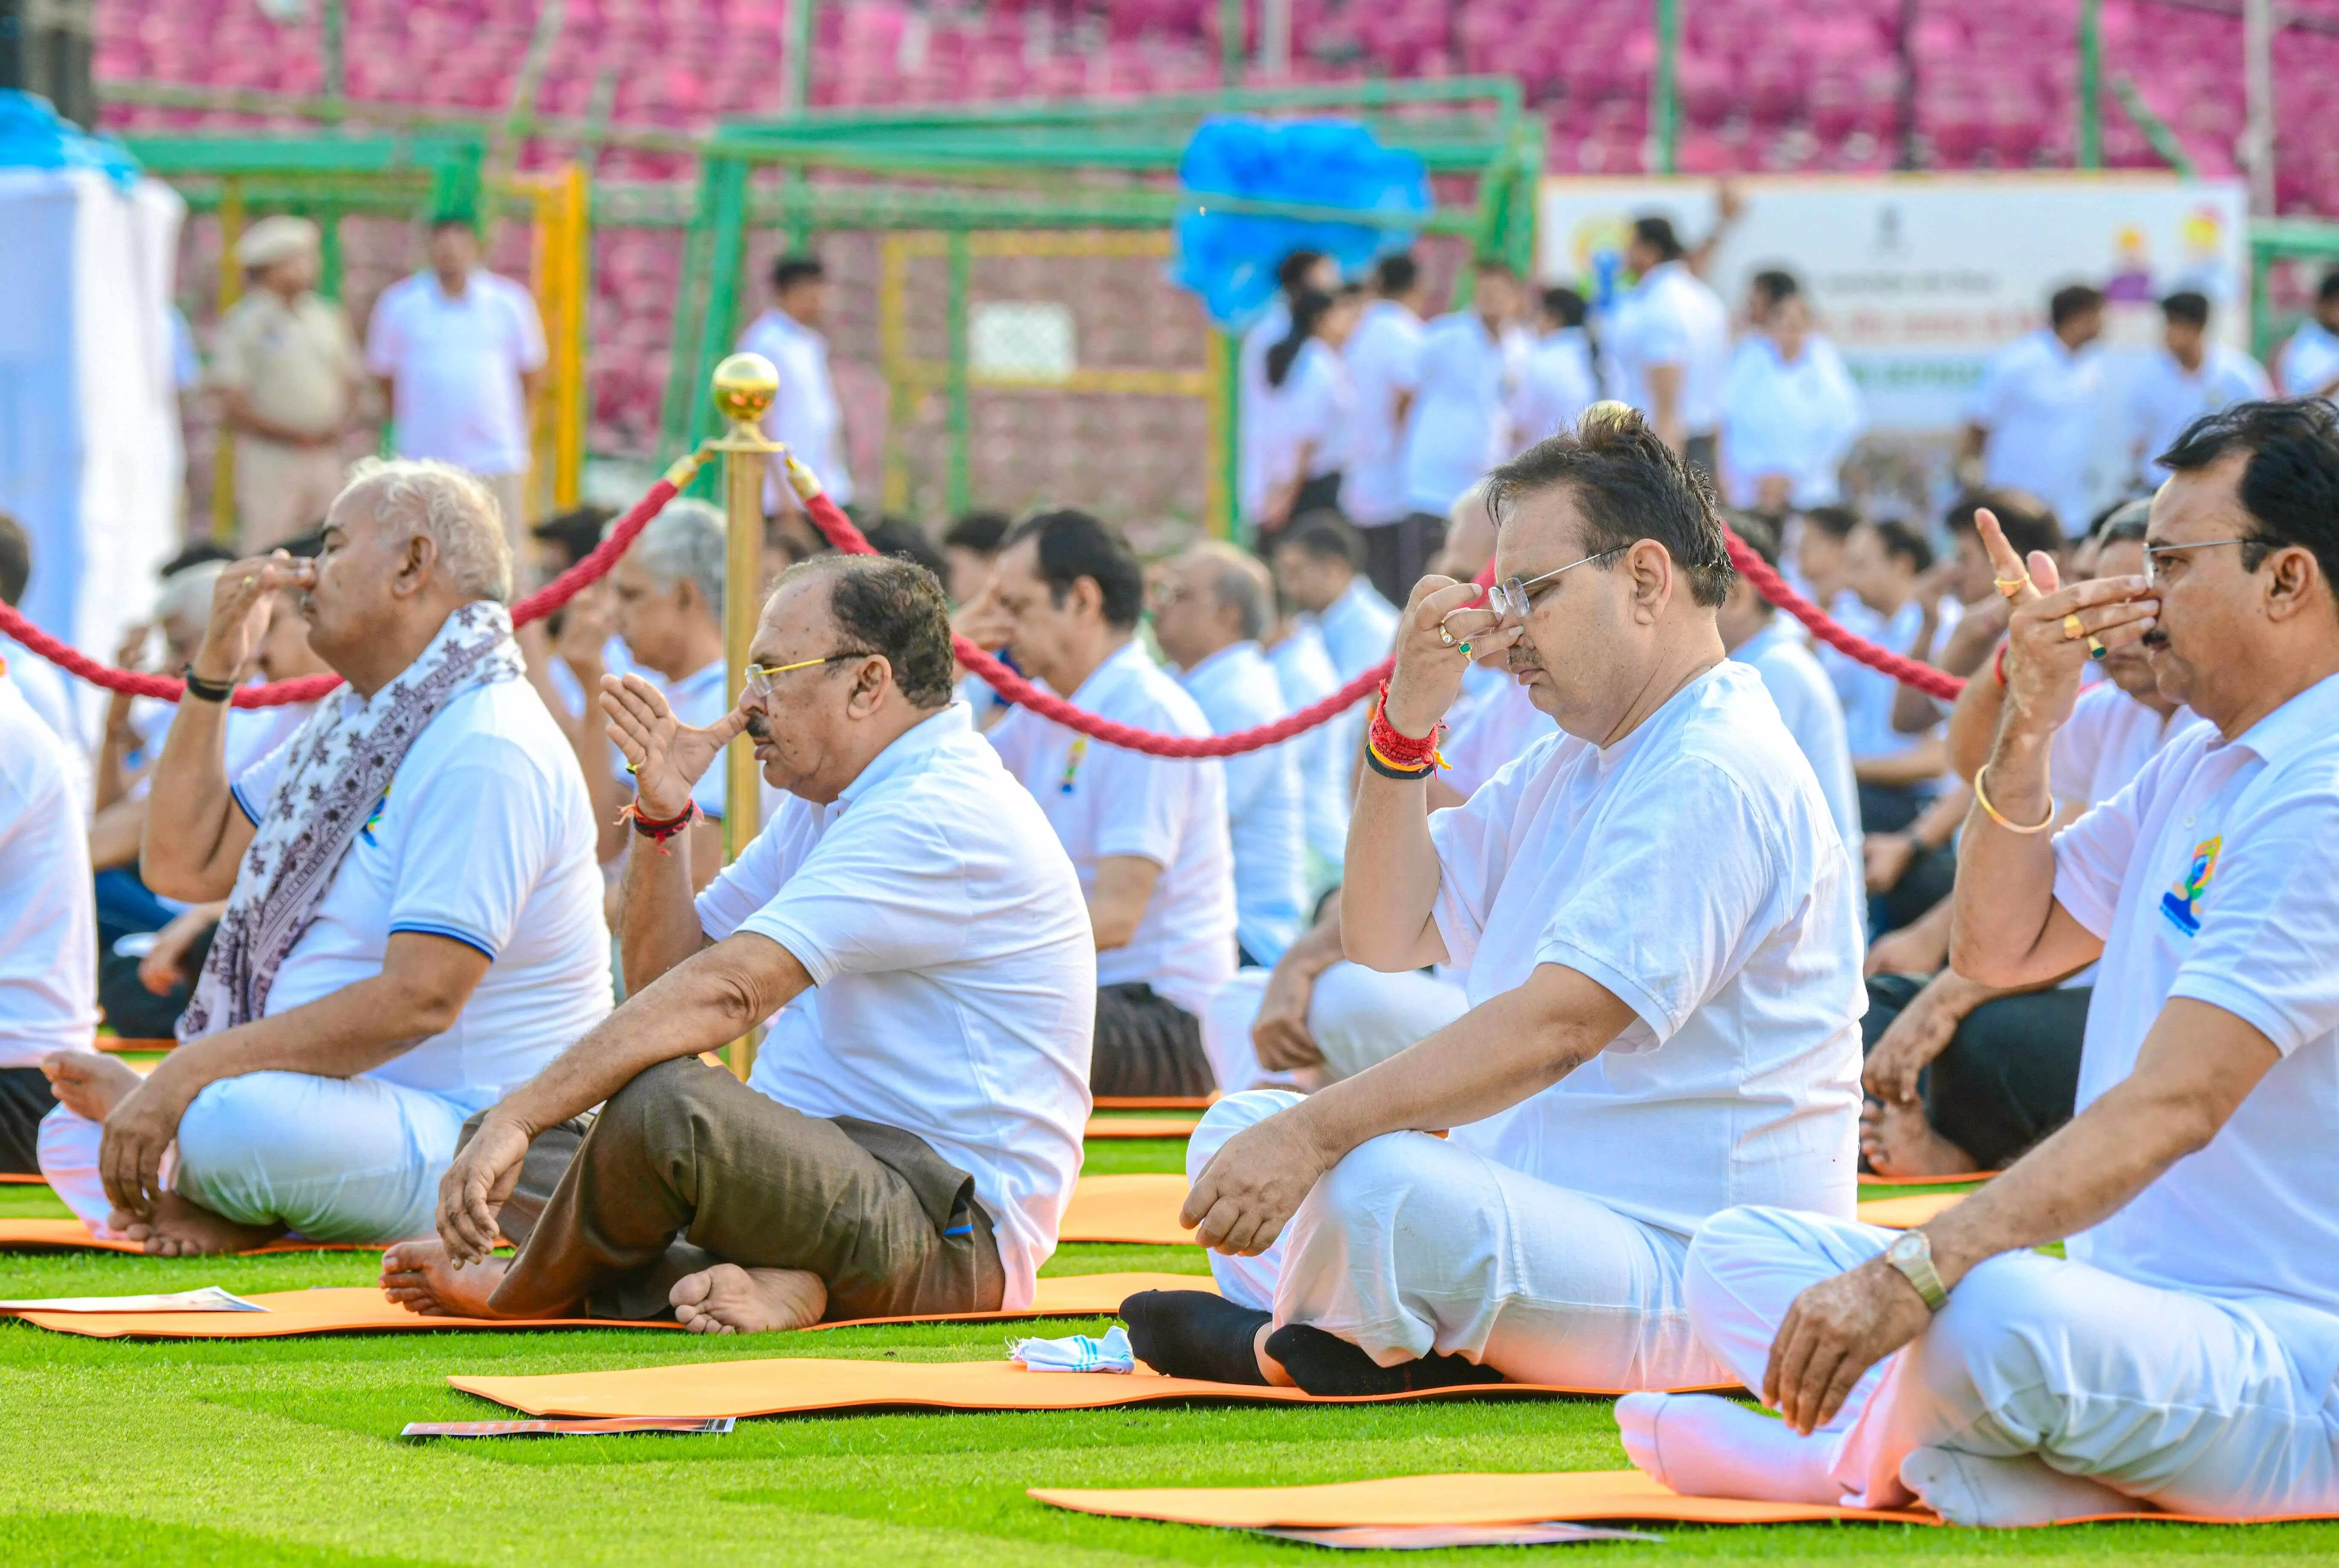 CM भजनलाल शर्मा : स्वस्थ जीवन शैली में योग की अहम भूमिका प्रधानमंत्री जी की पहल से विश्व में योग हुआ लोकप्रिय